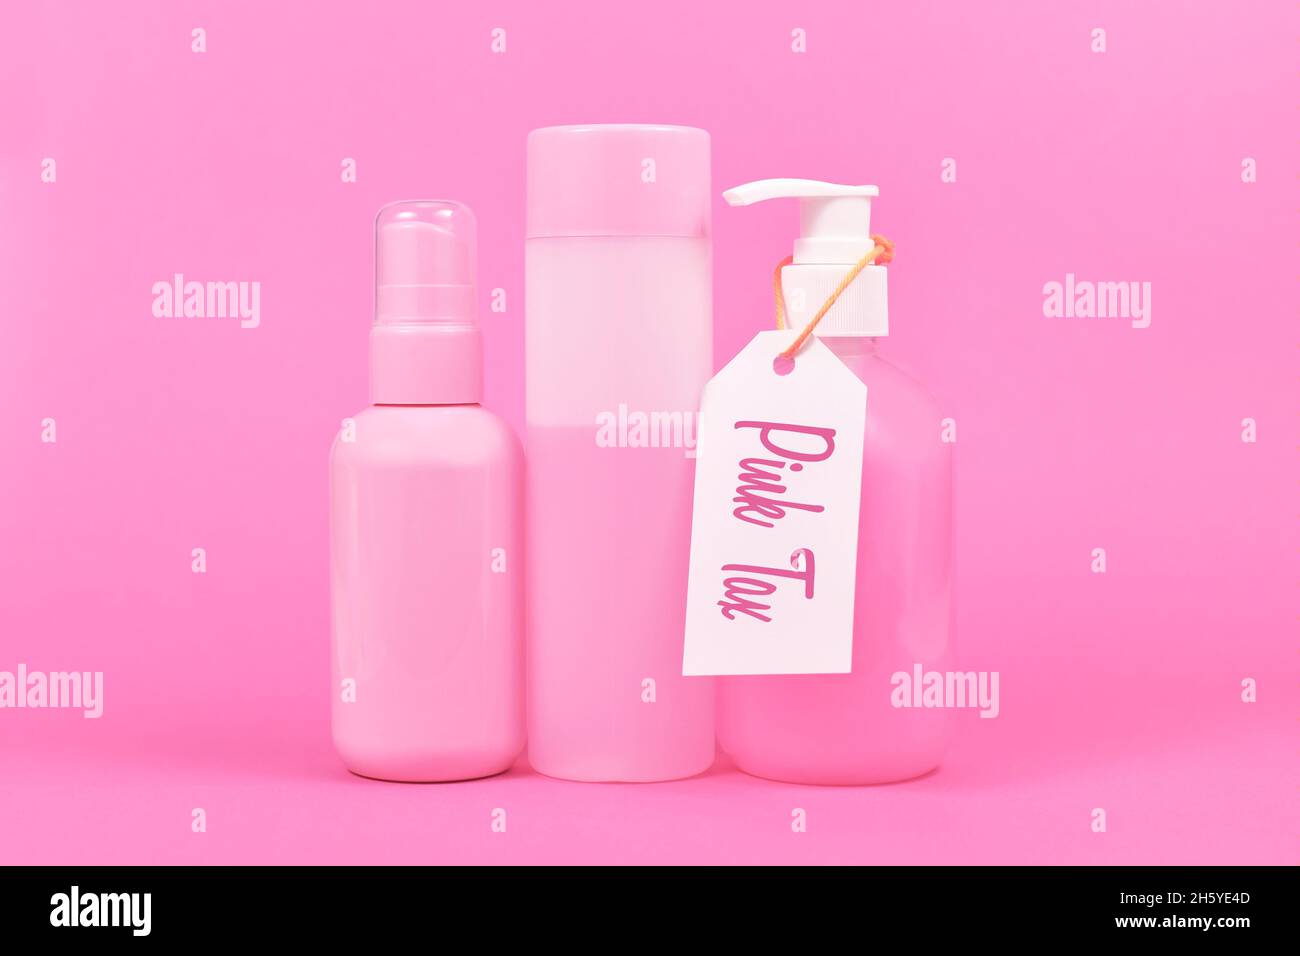 Concepto de impuesto rosa con diversos productos de higiene de color rosa estereotipo comercializados a las mujeres Foto de stock